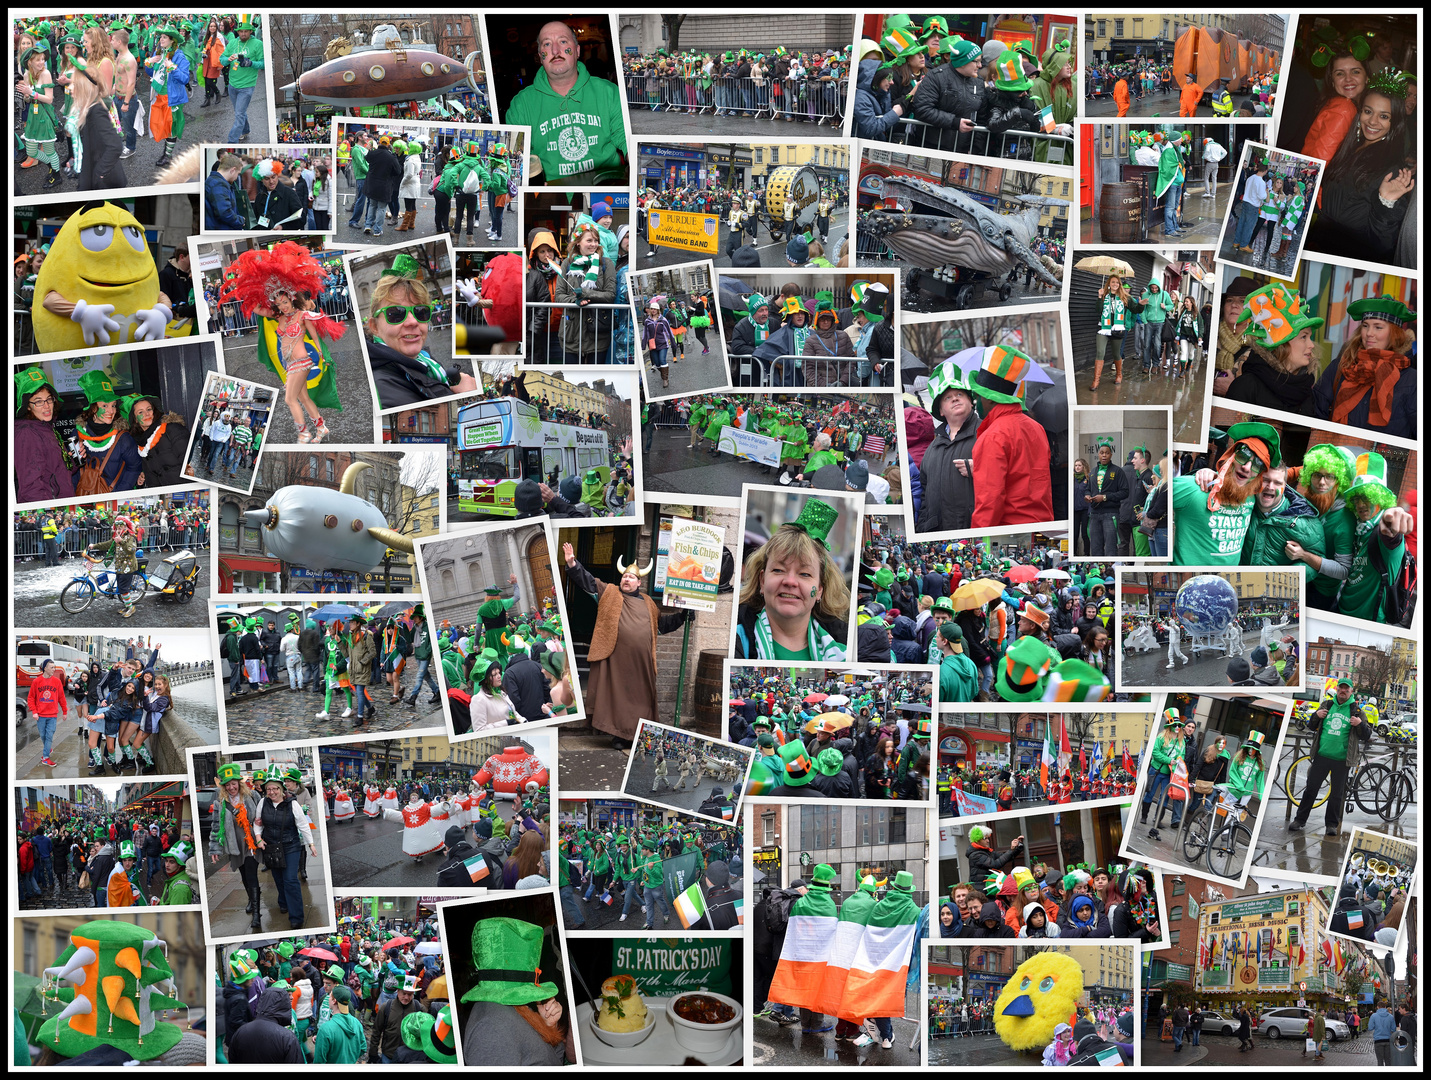 St. Patrick's Day 2013 - Dublin - Ireland